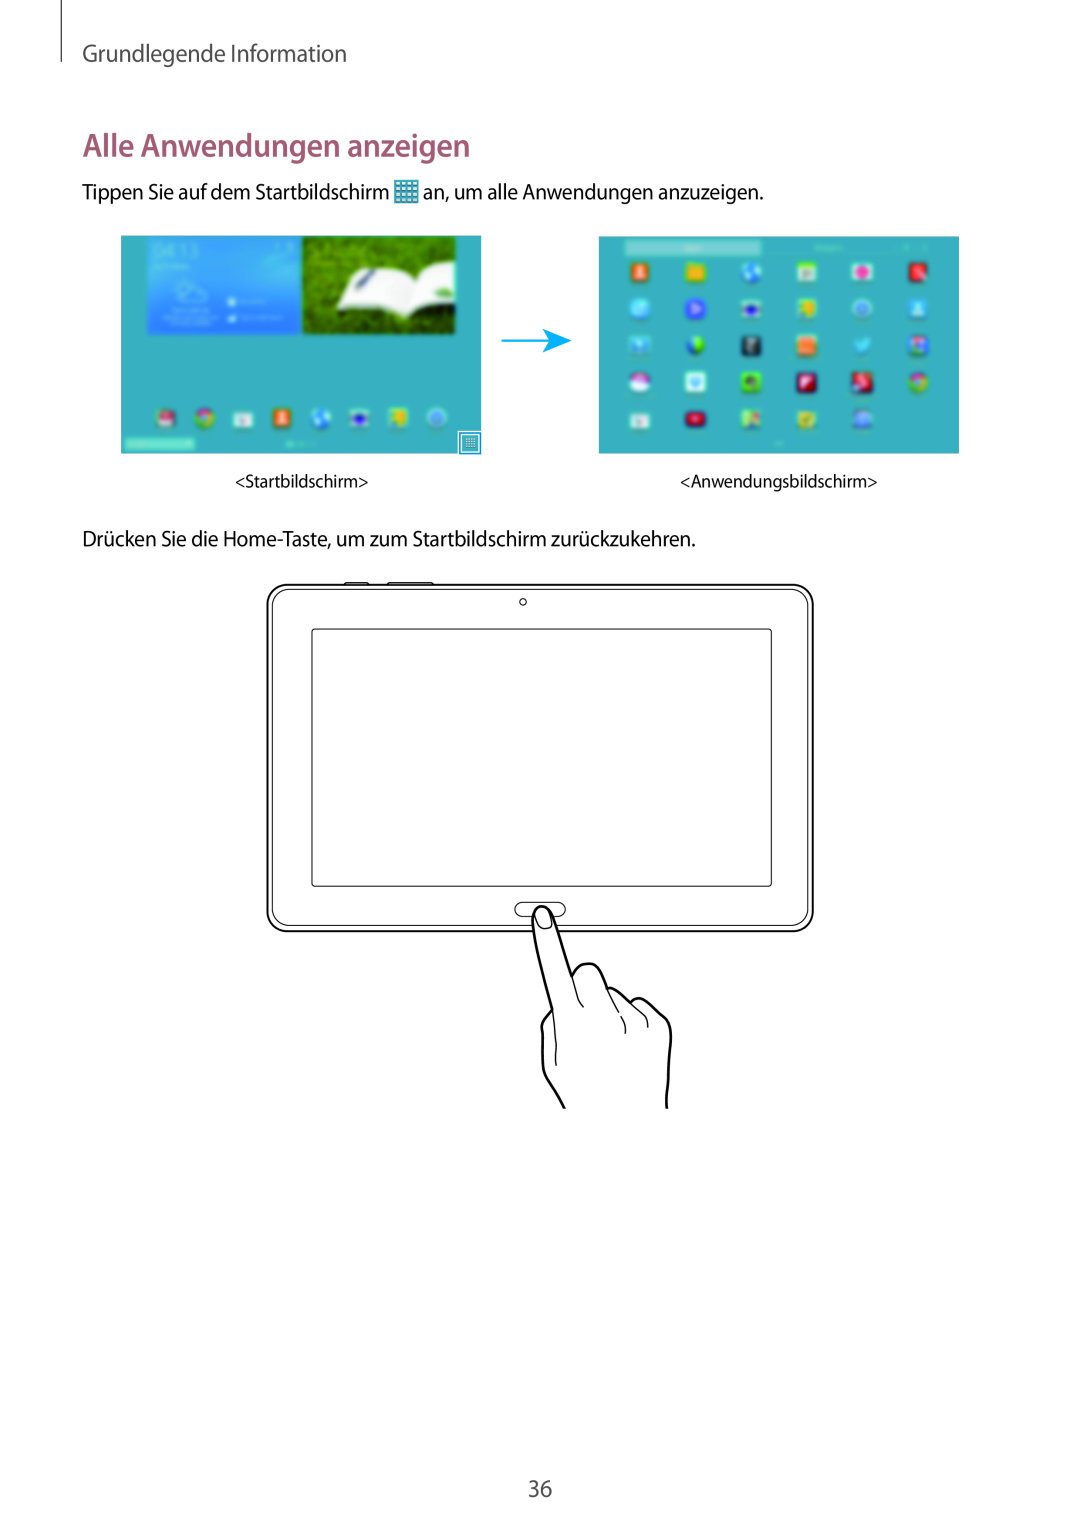 Samsung SM-P9000ZKYEUR manual Alle Anwendungen anzeigen, Grundlegende Information, Startbildschirm, Anwendungsbildschirm 